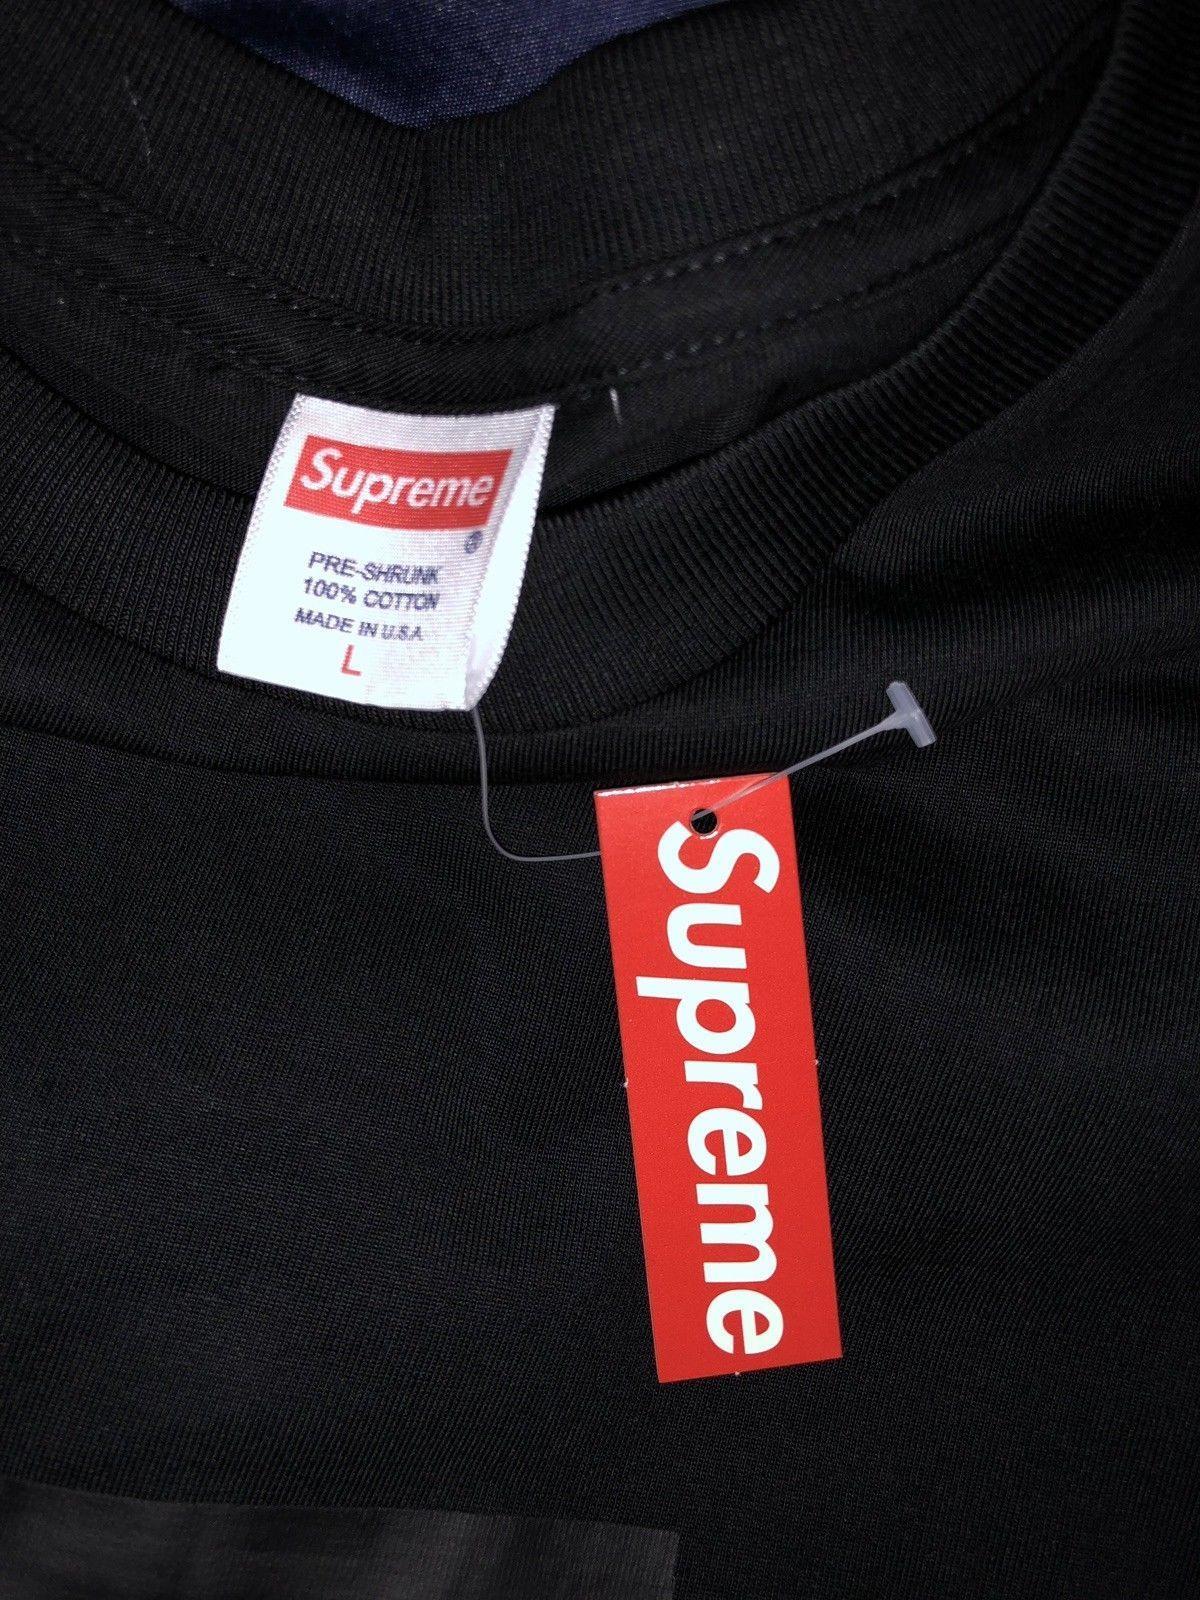 Supreme BAPE Polo Logo - Supreme Box Logo T Shirt Black Size L NEW W/ TAGS. Supreme, BAPE